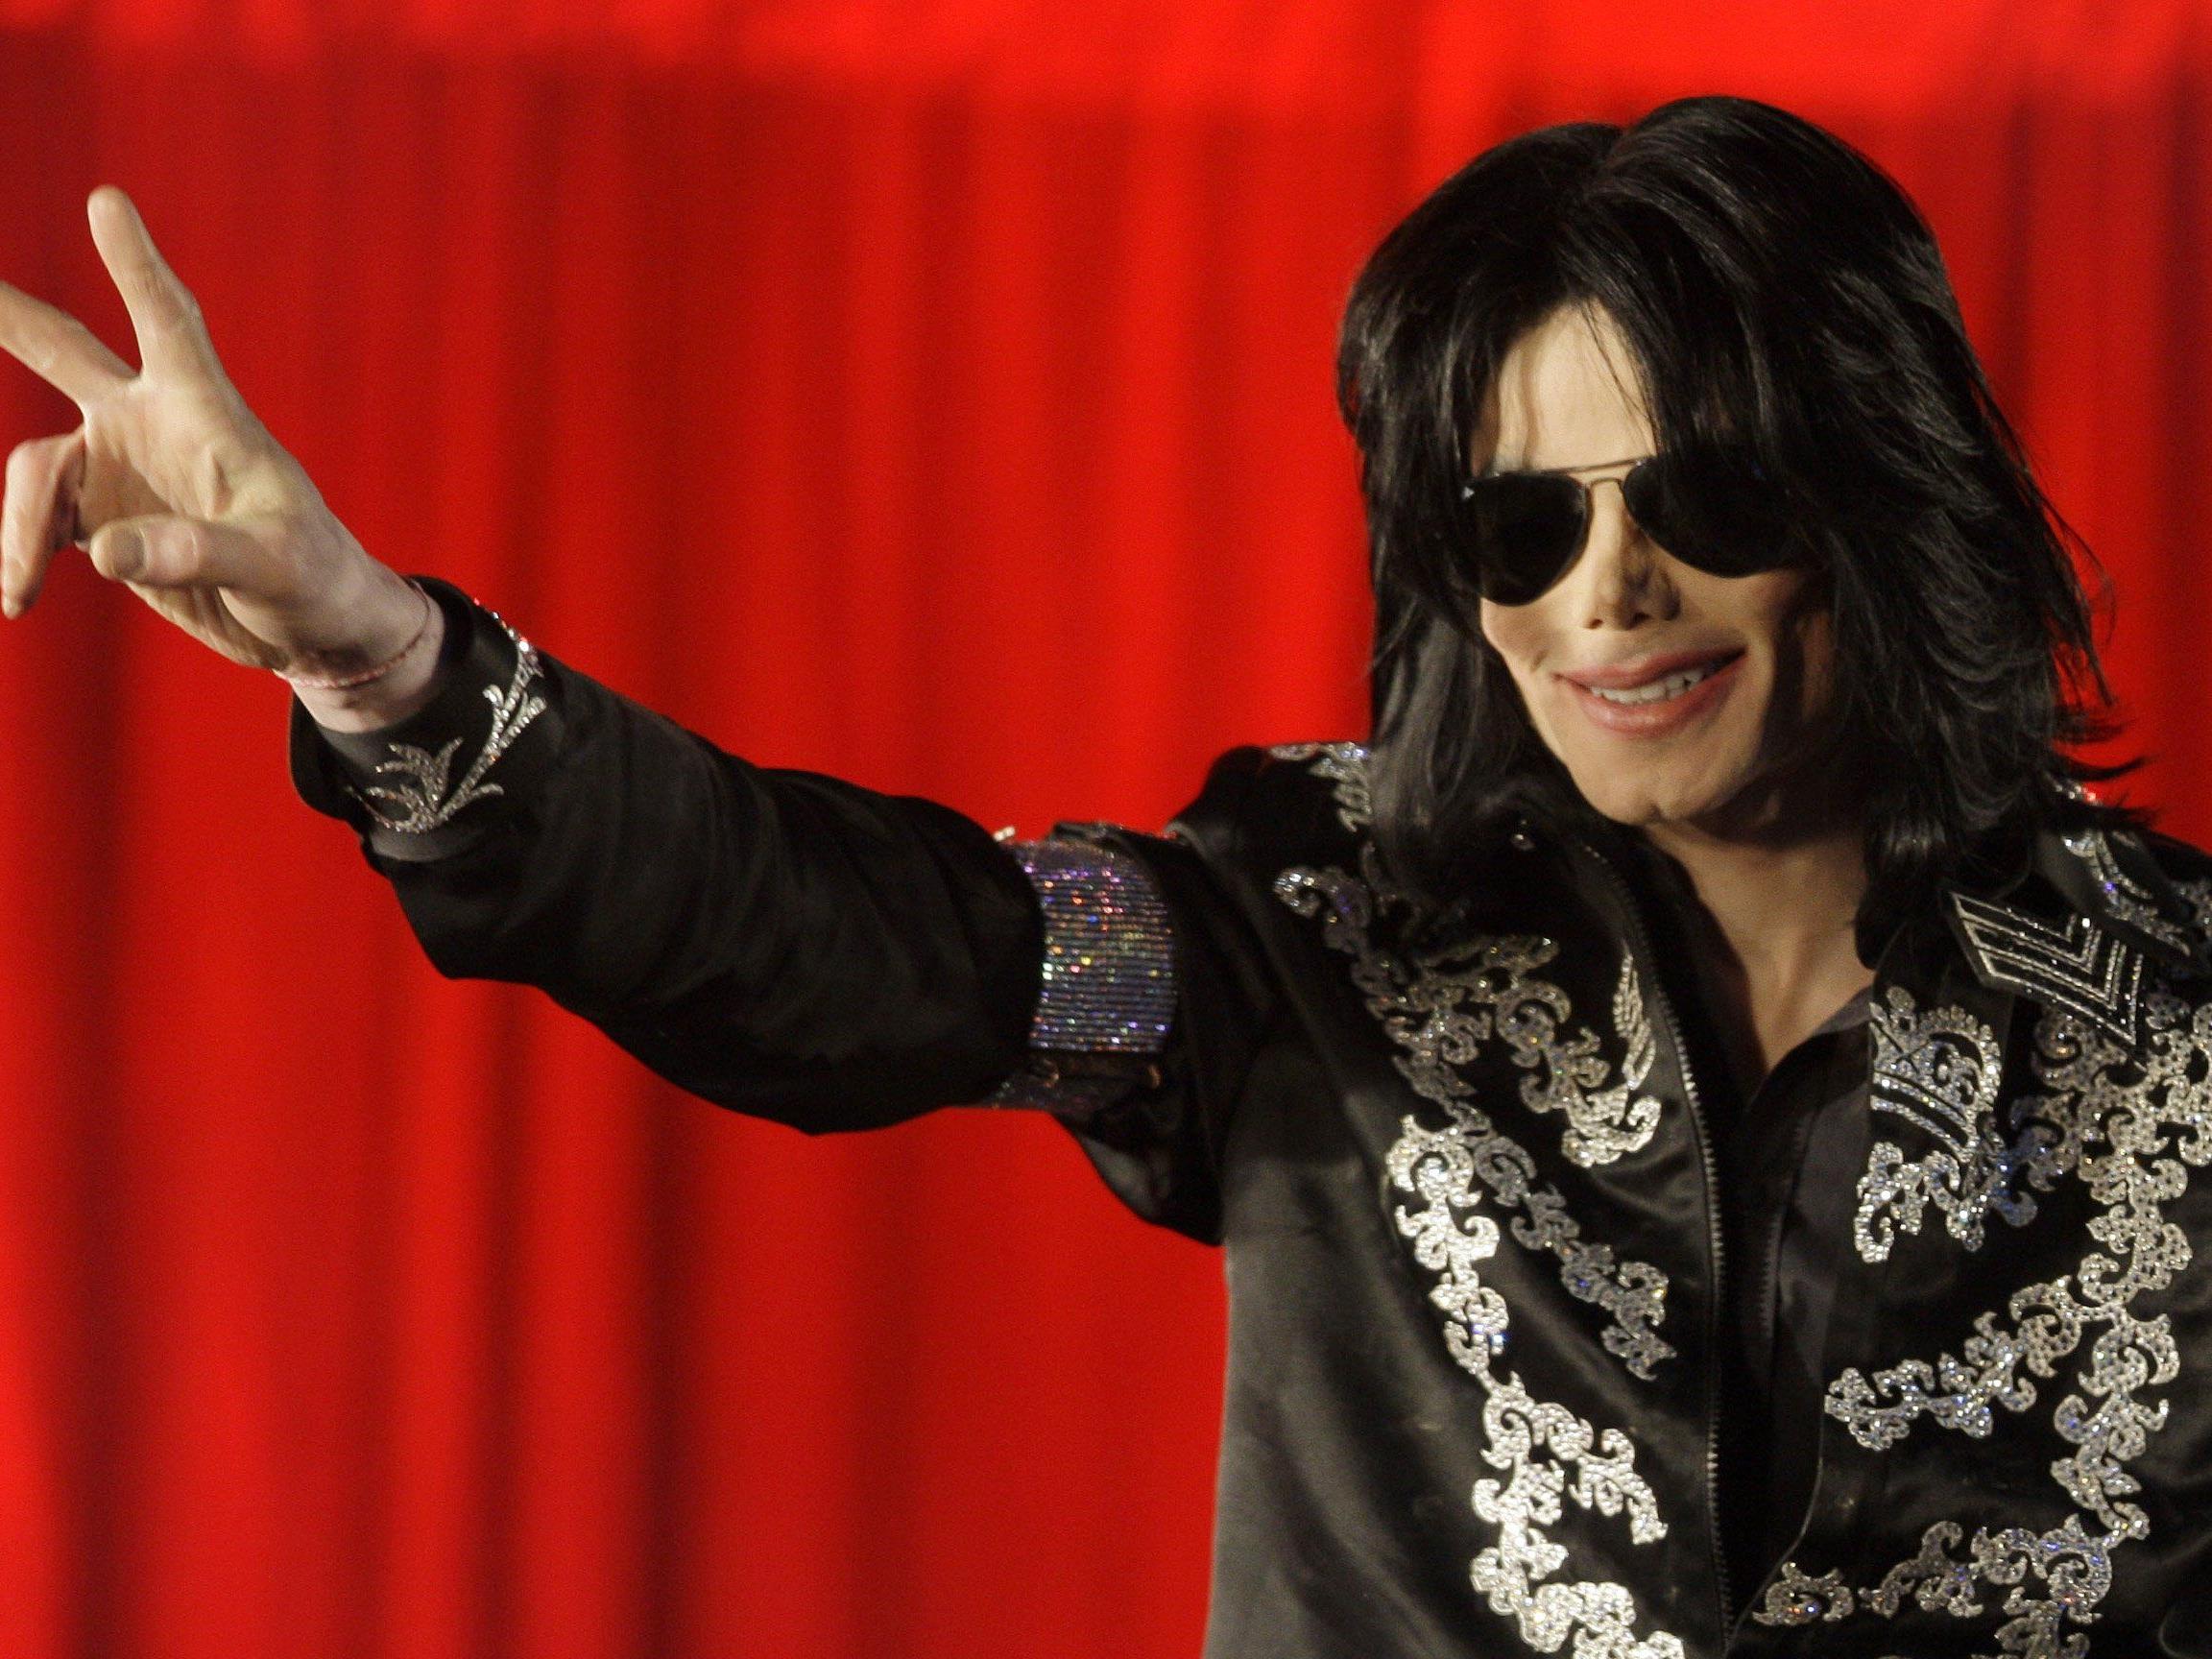 Jackson war 2009 an einer Überdosis Medikamente gestorben